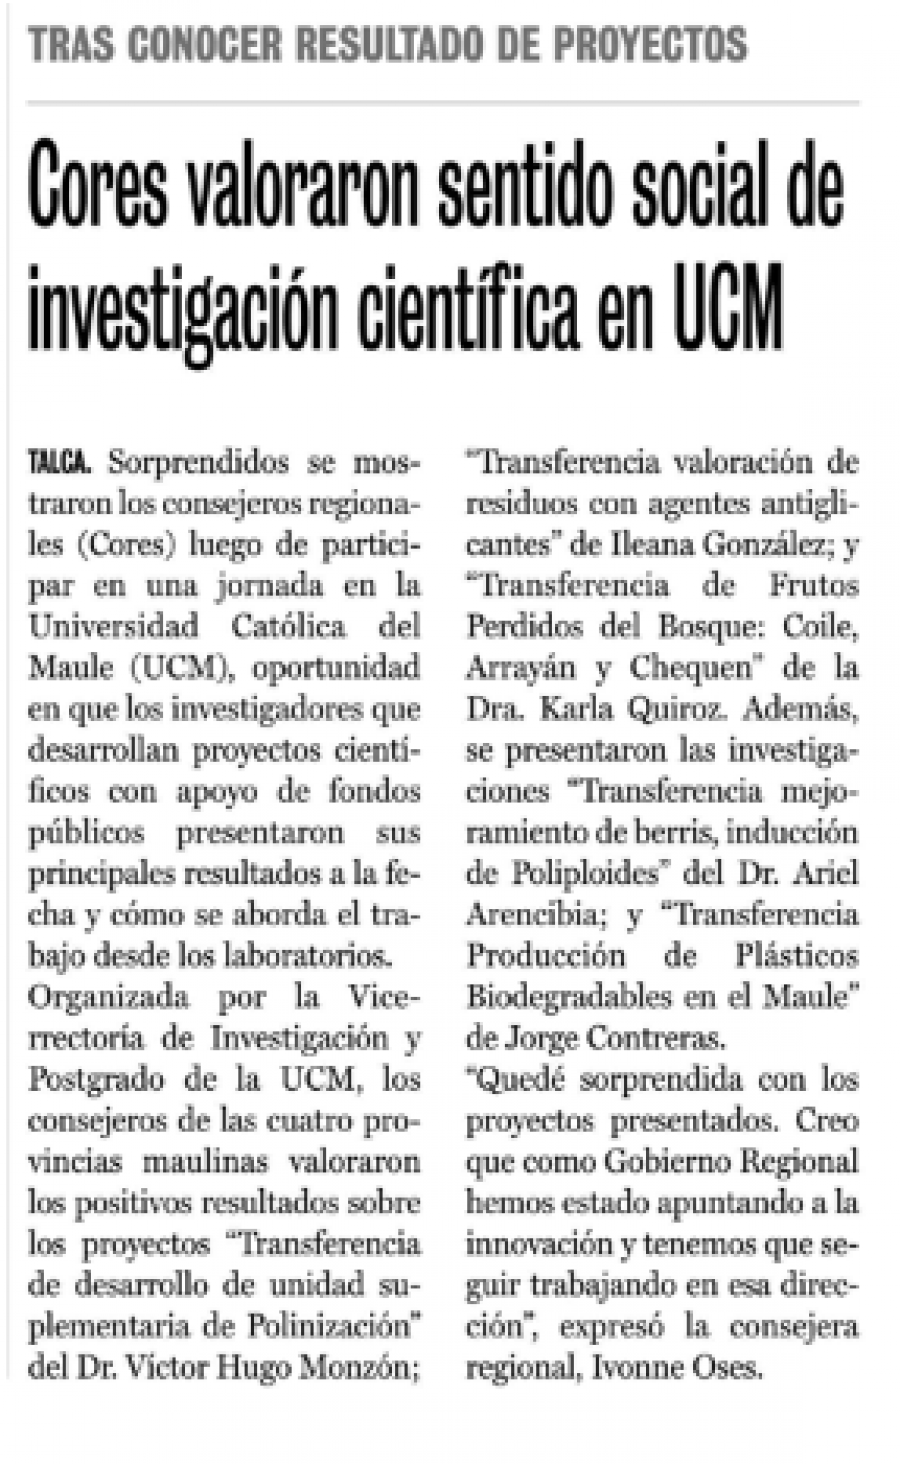 05 de junio en Diario La Prensa: “Cores valoraron sentido social de investigación científica en UCM”